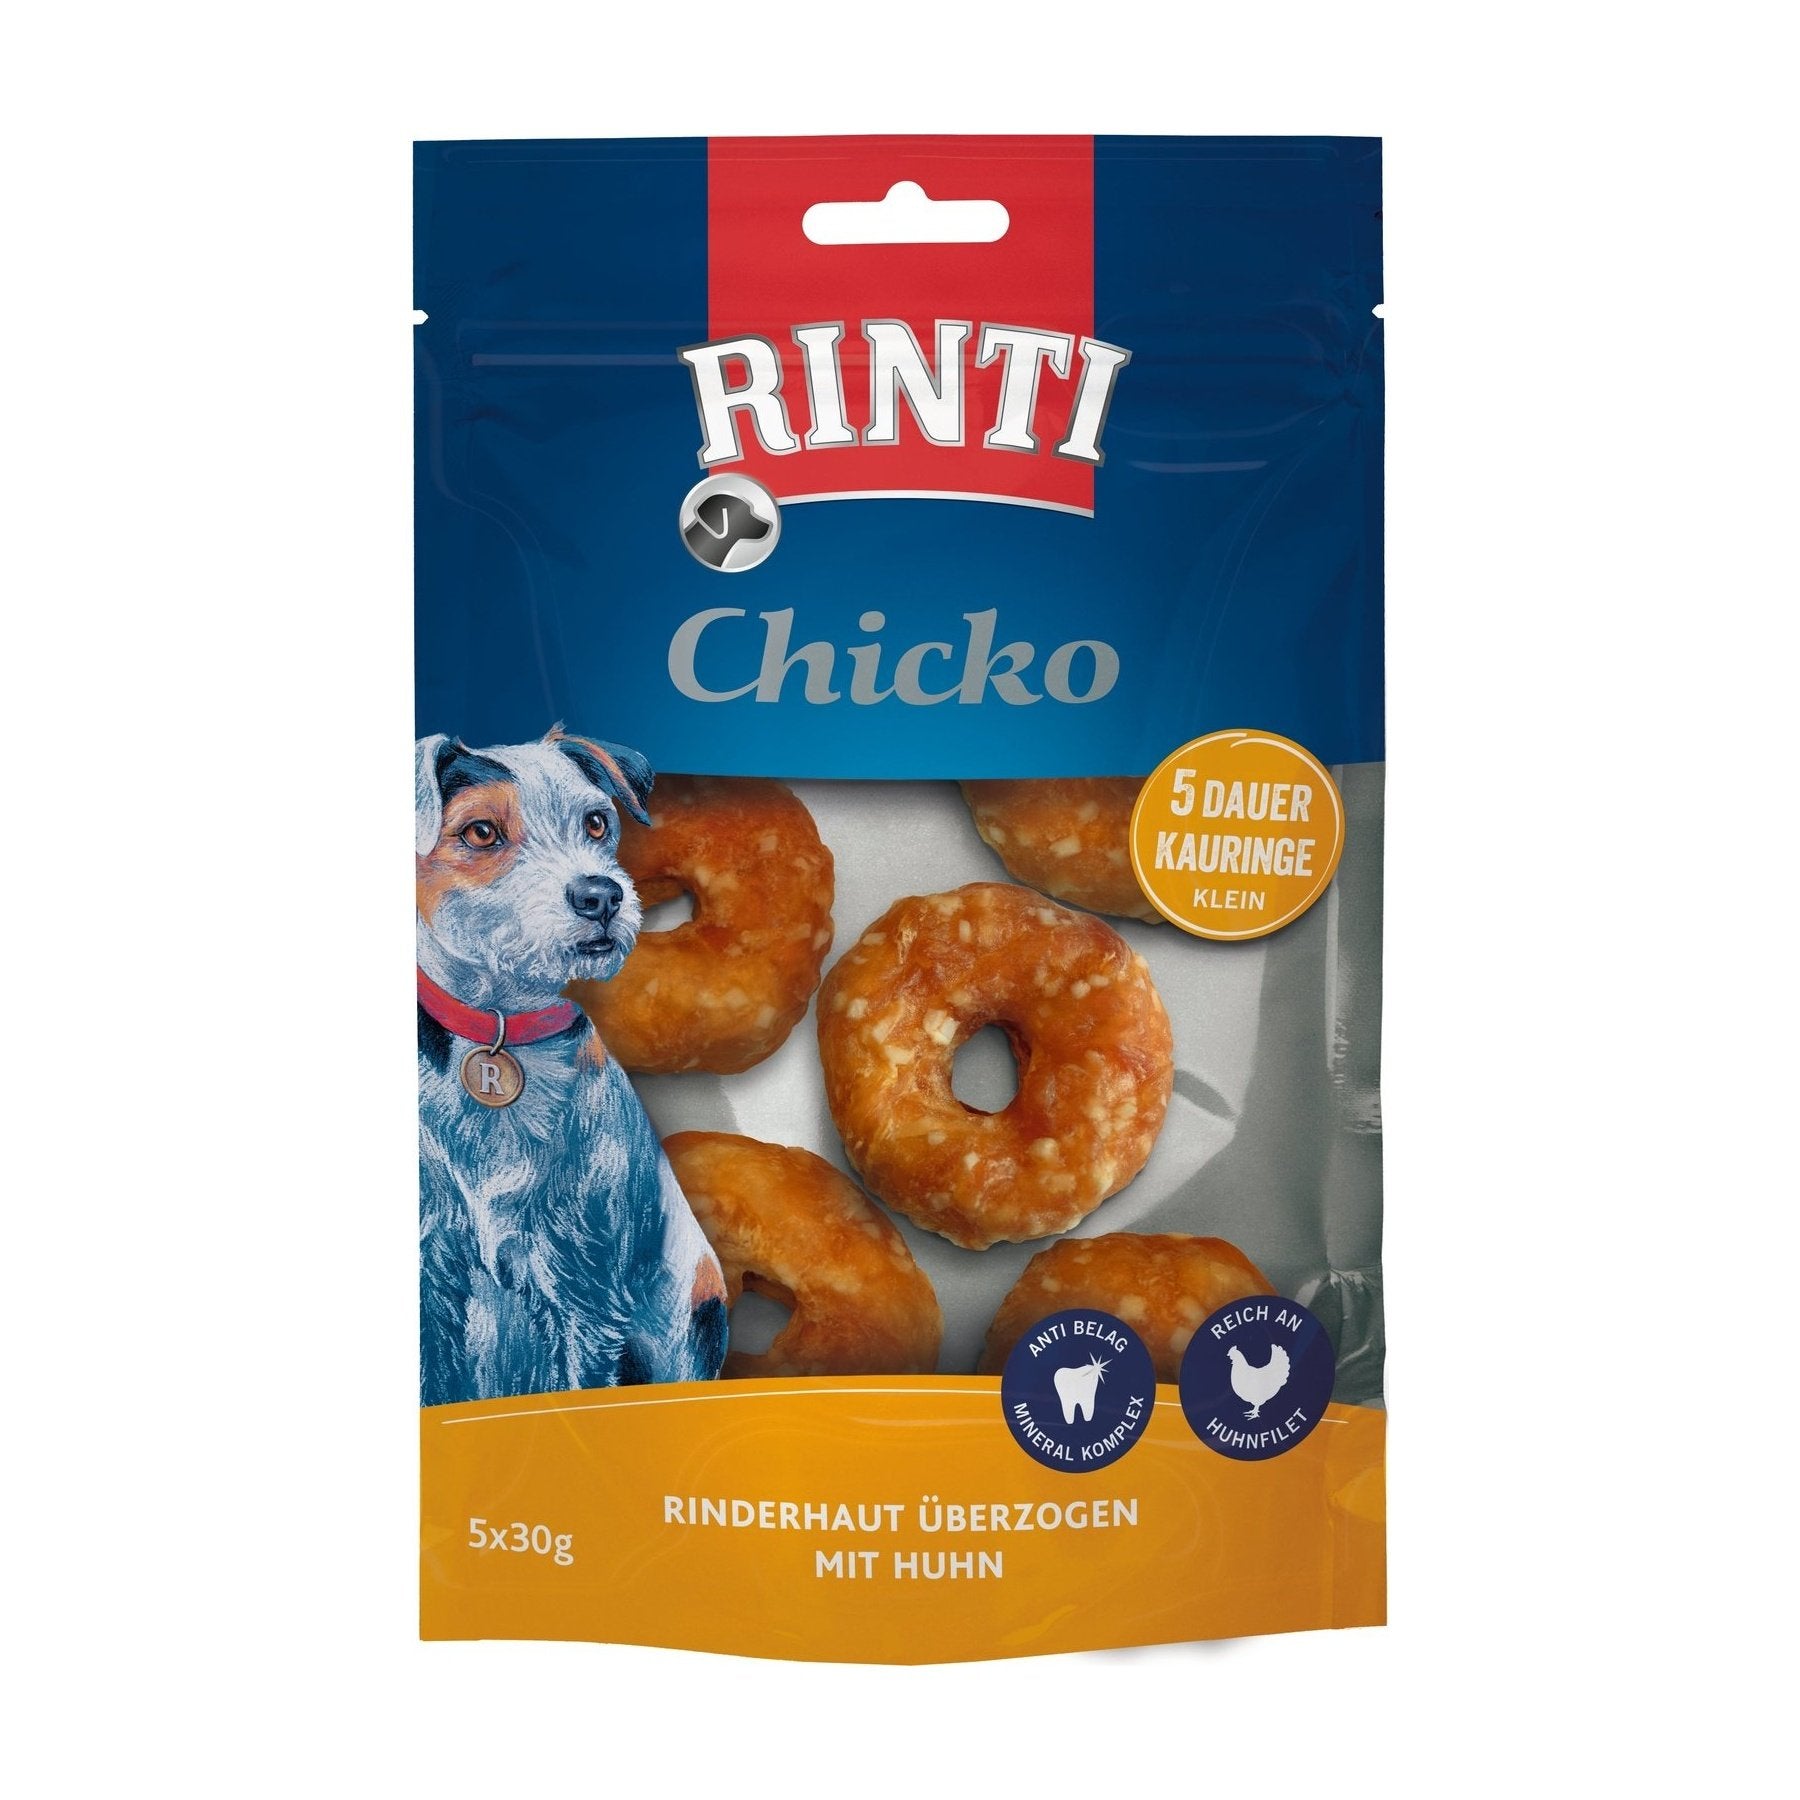 Rinti Chicko Dauer-Kauringe klein mit Huhn - zoo.de